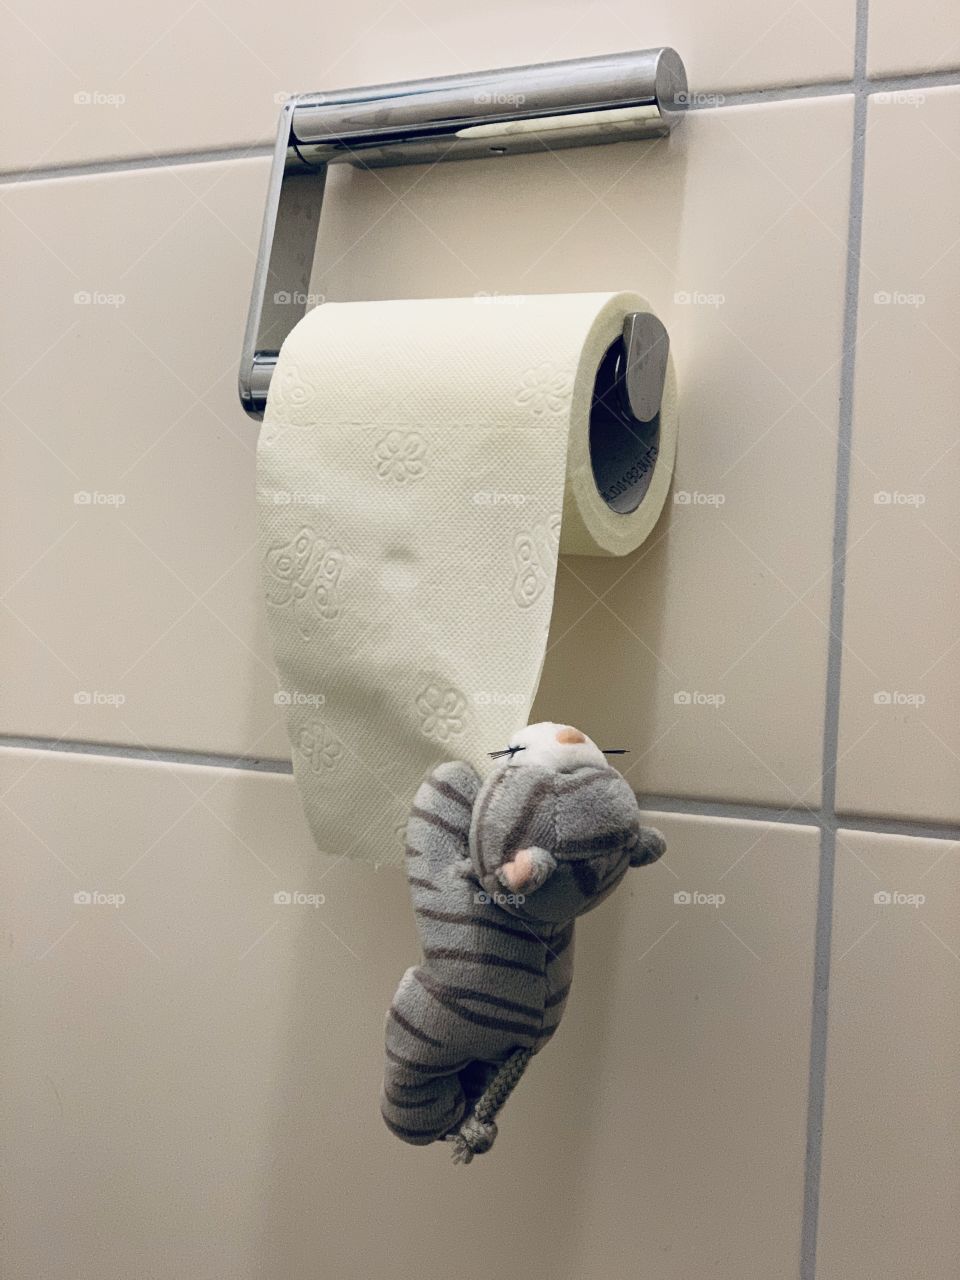 I love toilet paper 🐯